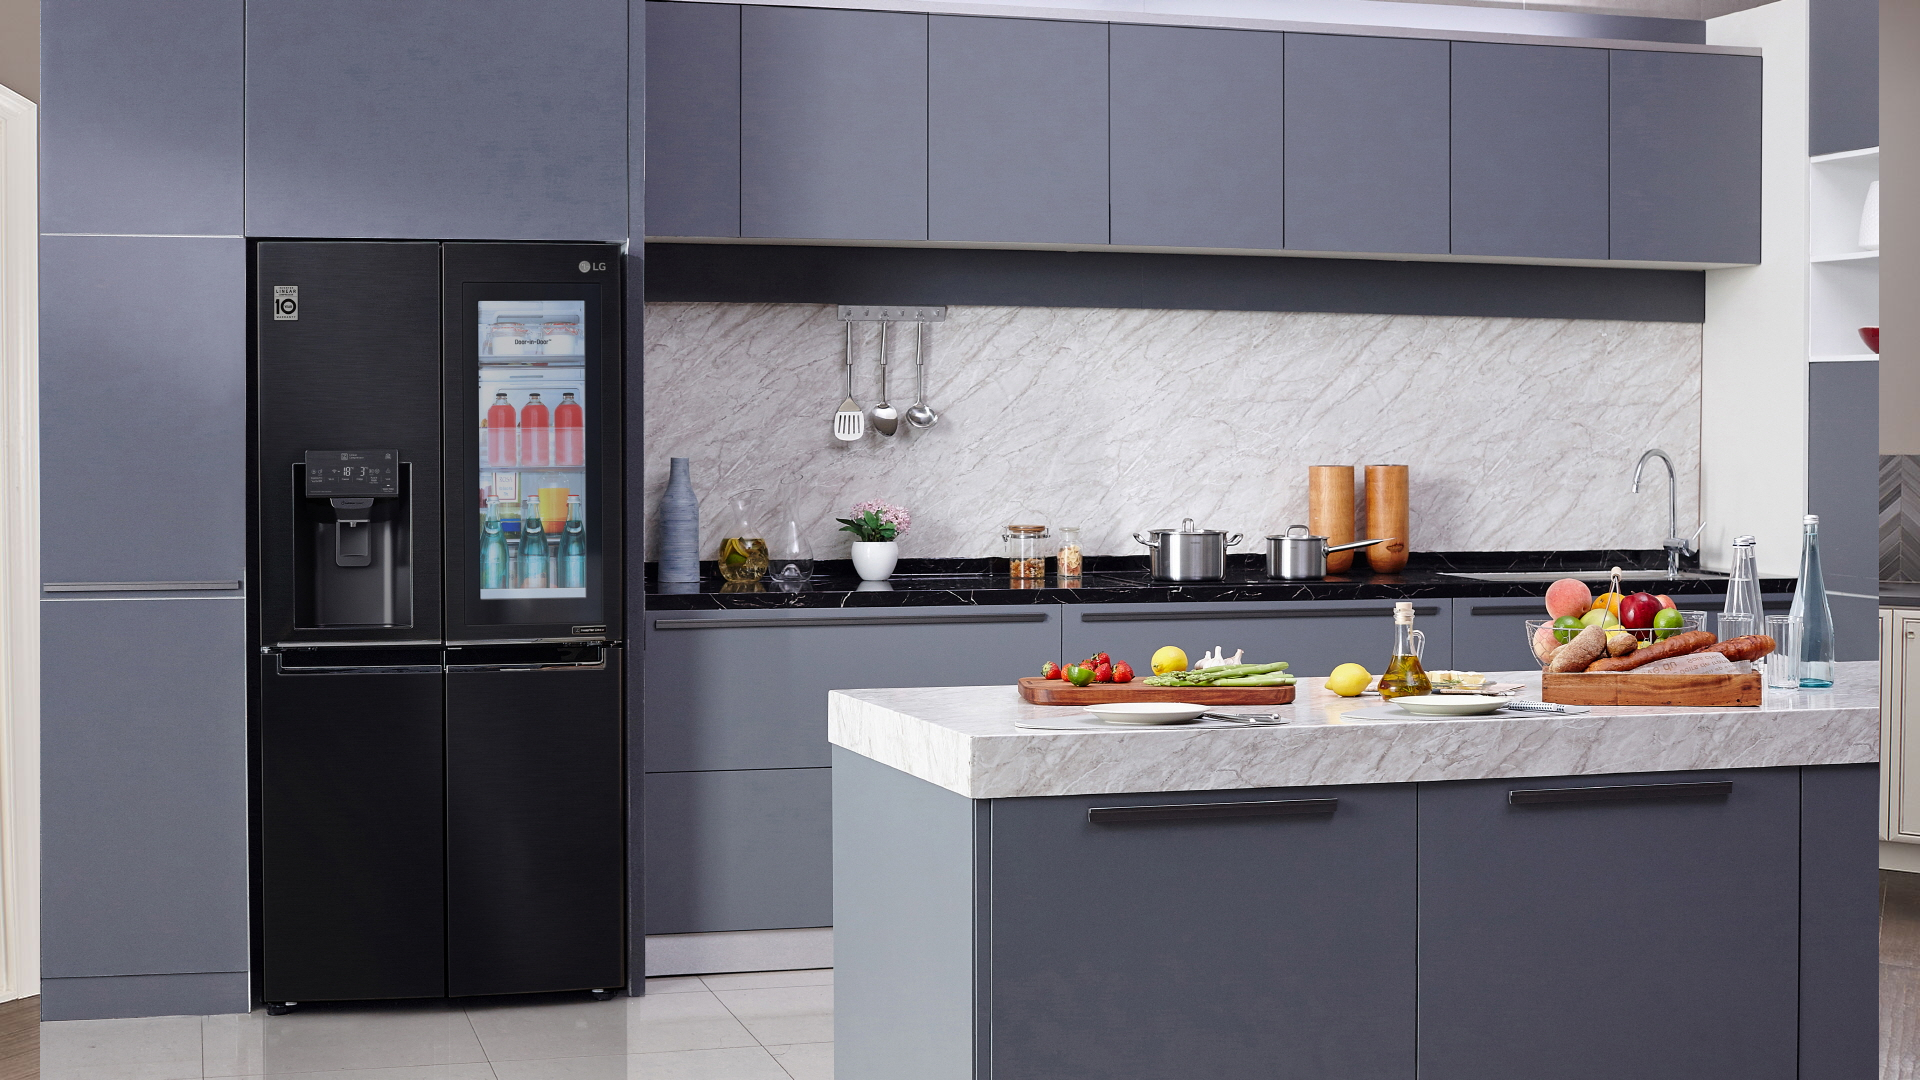 A Samsung smart fridge in a kitchen. 